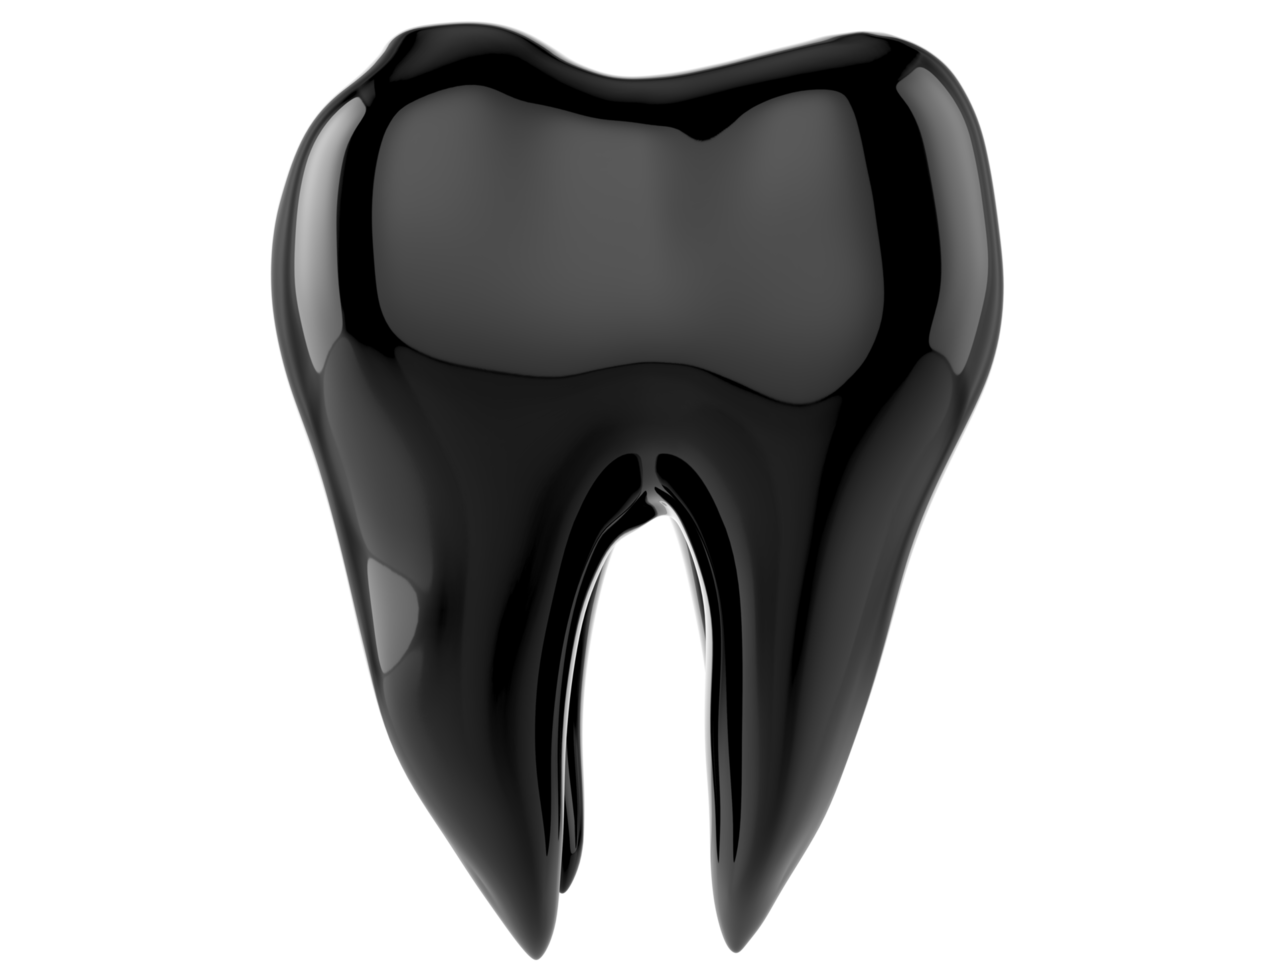 Dientes dentales 3d aislados sobre fondo transparente png